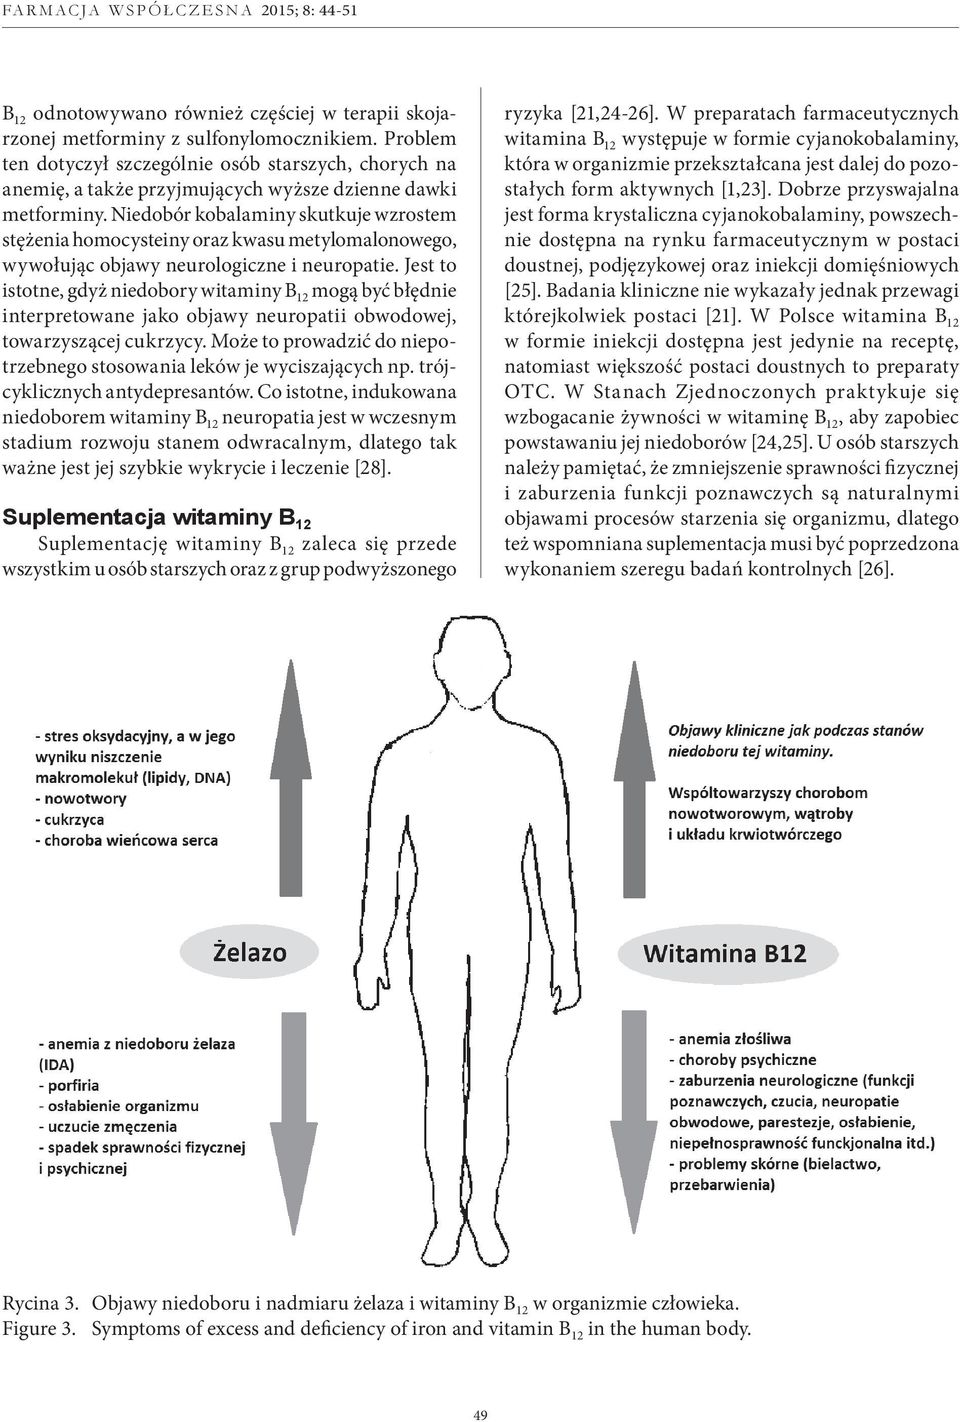 Hem i kobalamina w świecie medycyny i farmacji Heme and cobalamin in  medicine and pharmacy - PDF Free Download